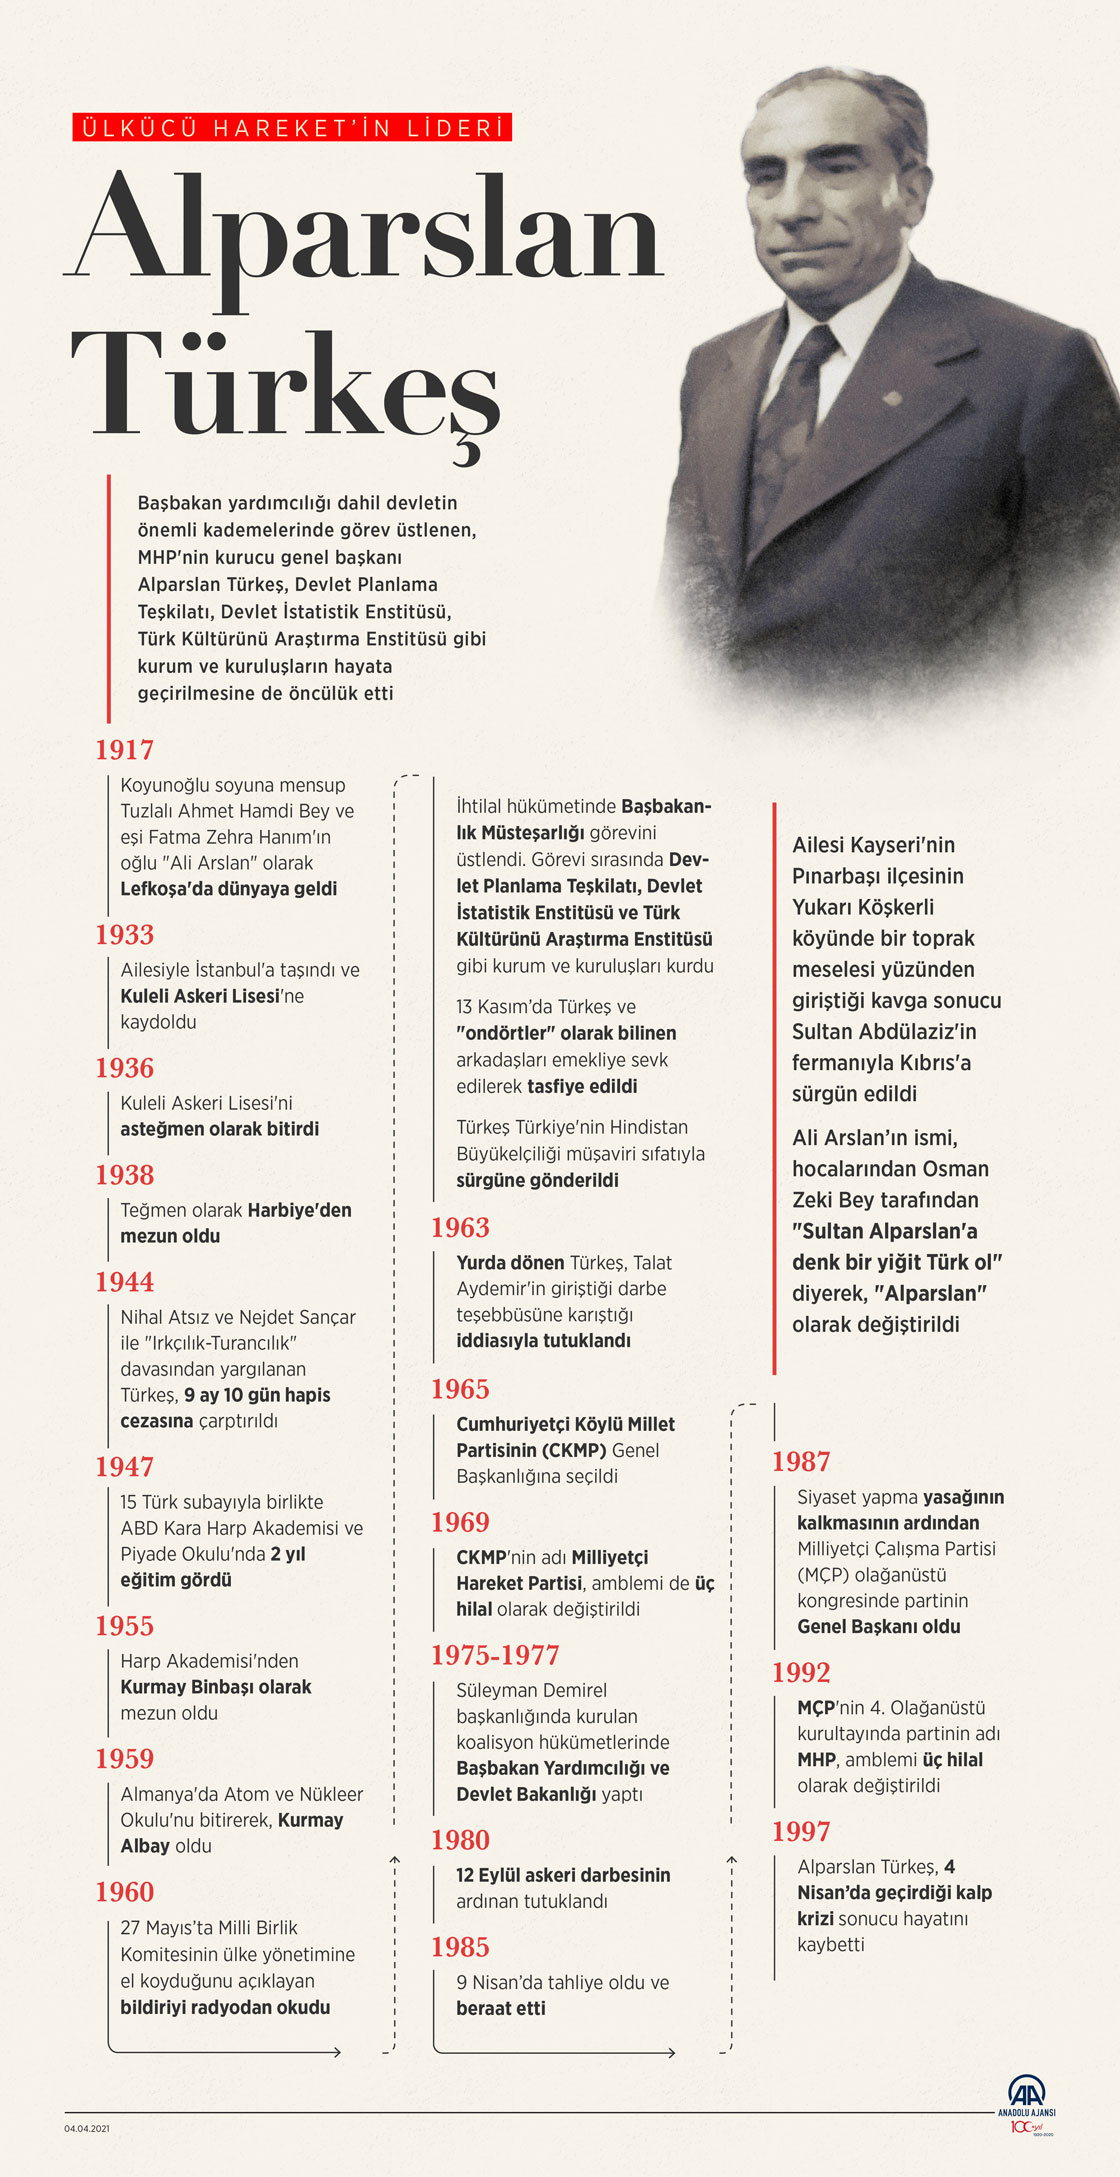 Ülkücü Hareket'in Lideri Türkeş'in vefatının 24. yılı